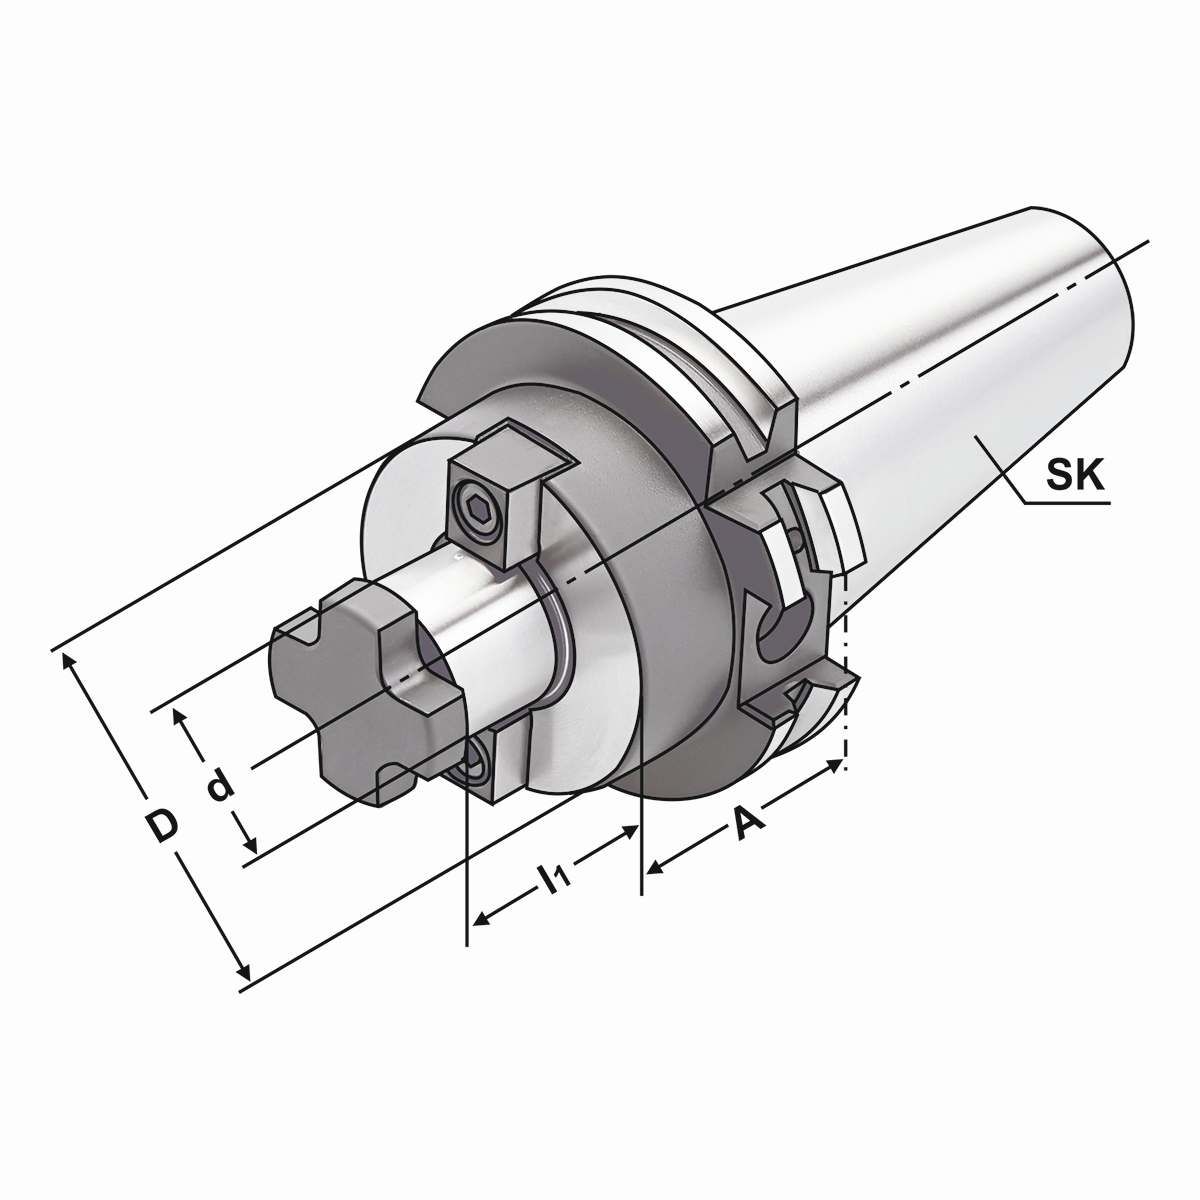 Quernut-Aufsteckdorn SK 30-27-50 mit vergrößertem Bunddurchmesser